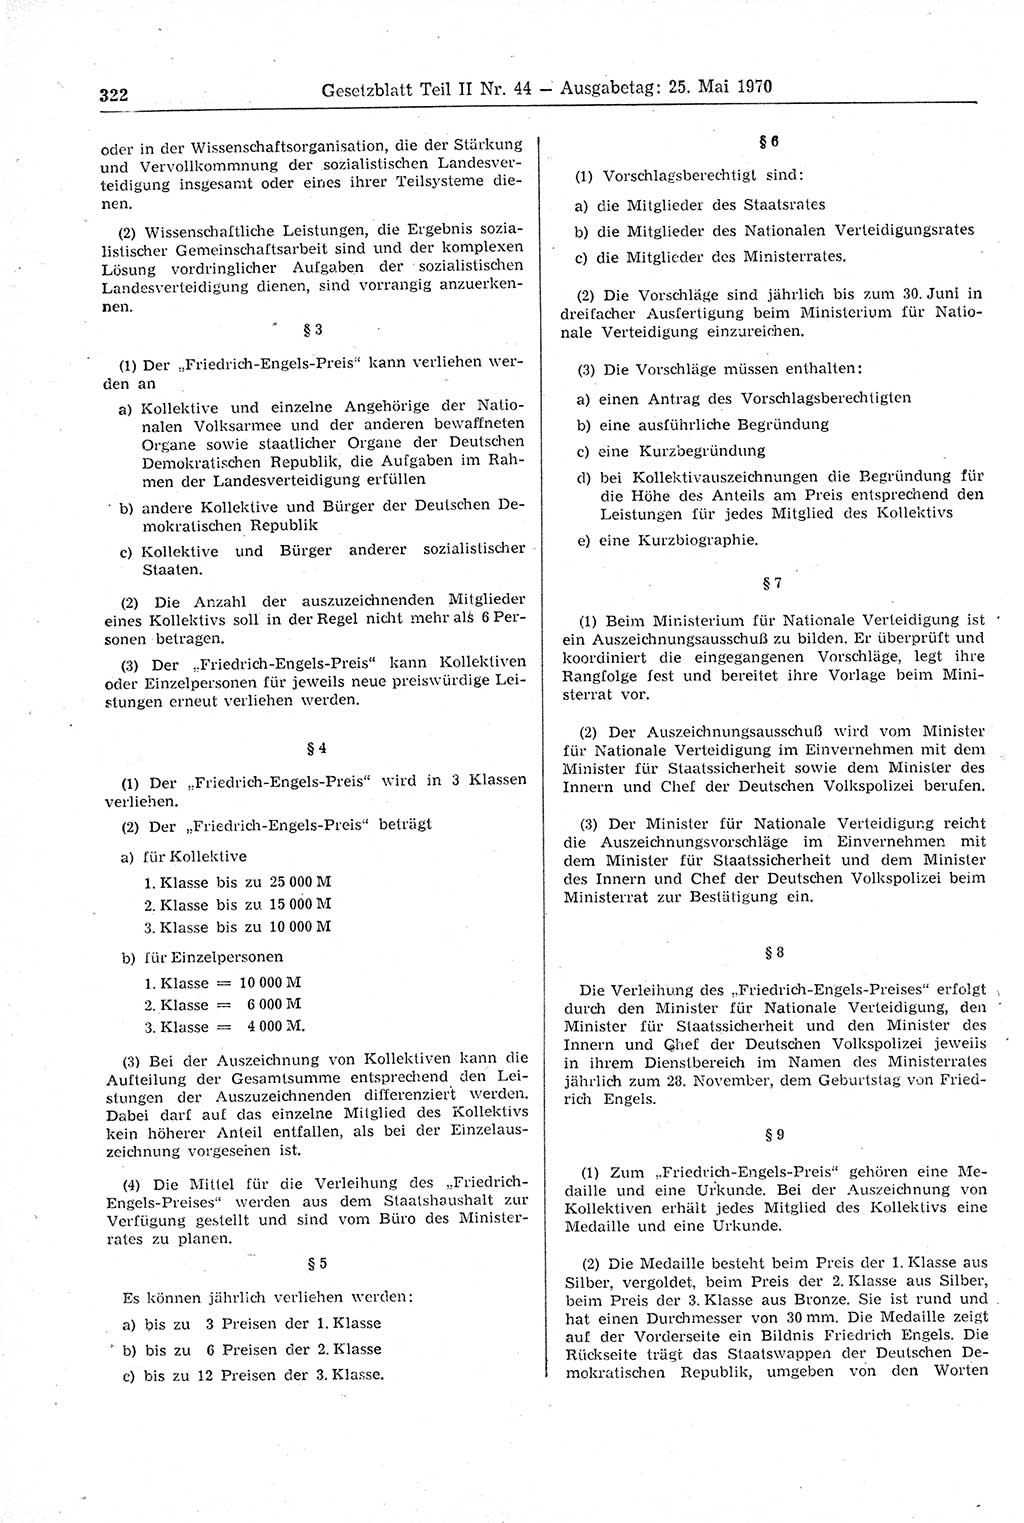 Gesetzblatt (GBl.) der Deutschen Demokratischen Republik (DDR) Teil ⅠⅠ 1970, Seite 322 (GBl. DDR ⅠⅠ 1970, S. 322)